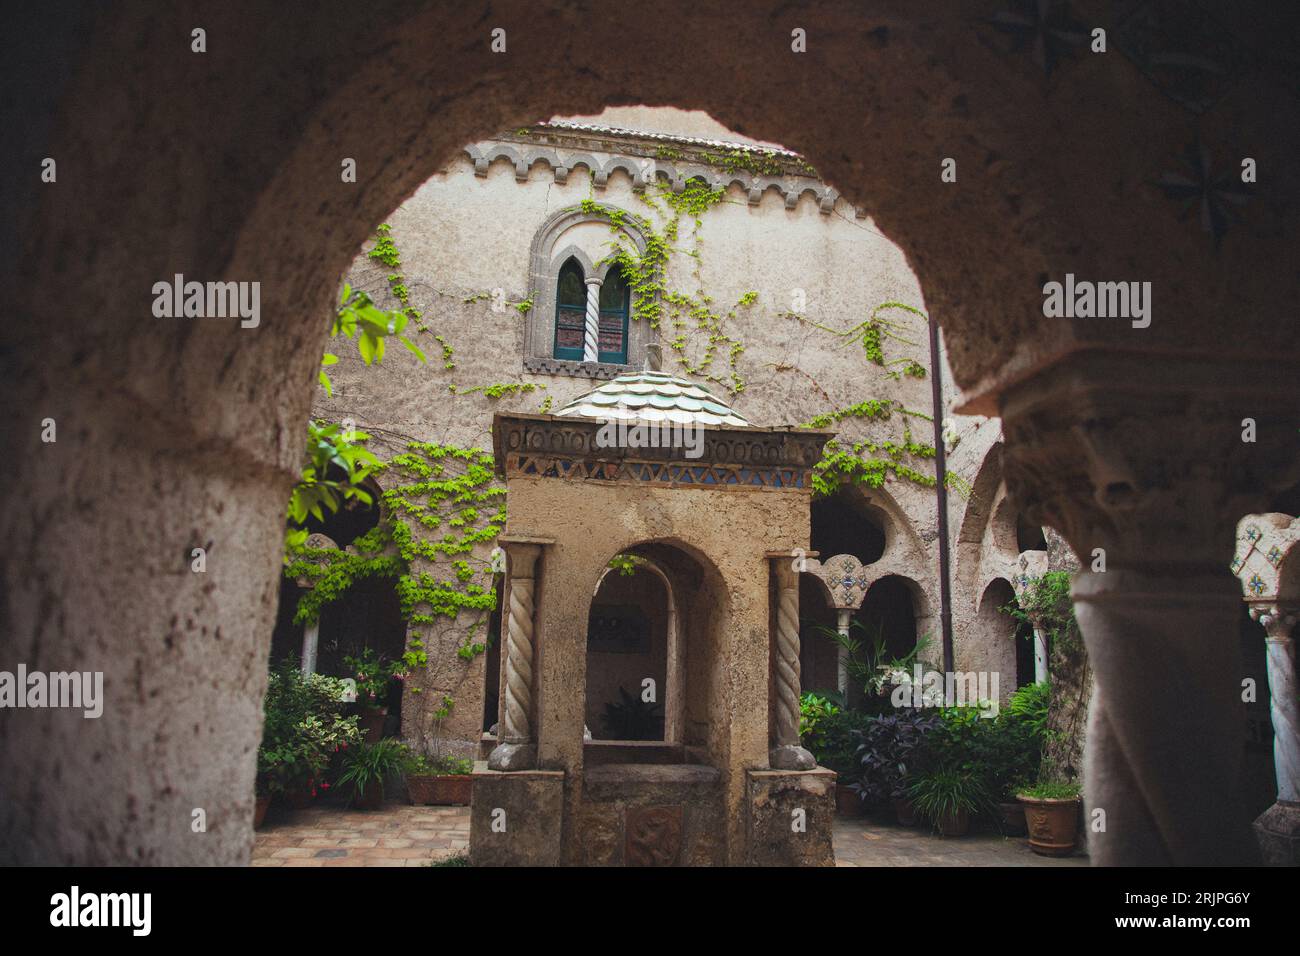 Villa Cimbrone Gardens in Ravello on the Amalfi Coast, Italy Stock Photo